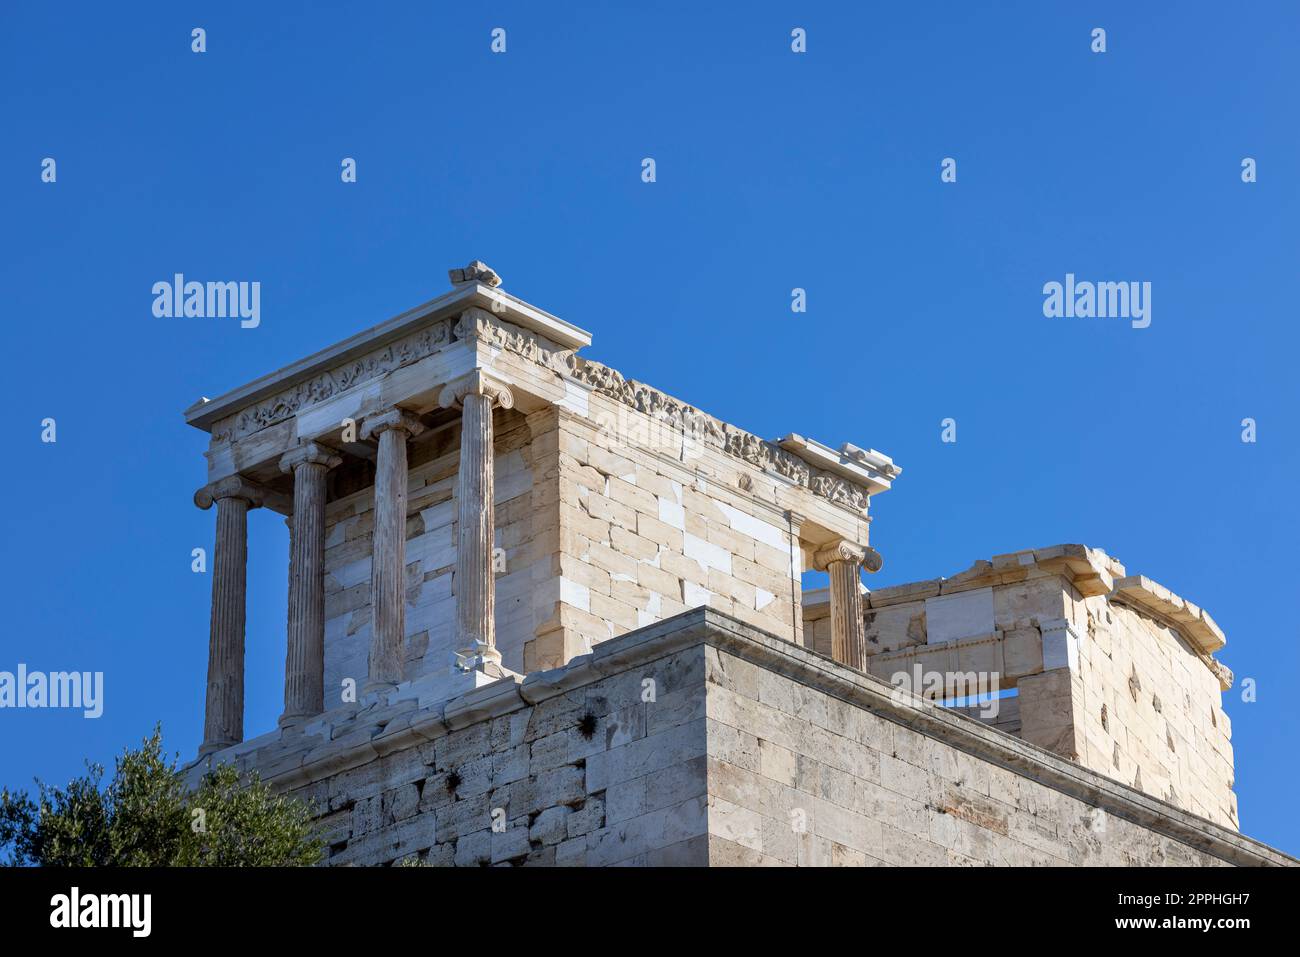 Tempio di Atena Nike a Propilaia, monumentale porta cerimoniale per l'Acropoli di Atene, Grecia. Si tratta di un'antica cittadella situata su un pendio roccioso sopra la città Foto Stock